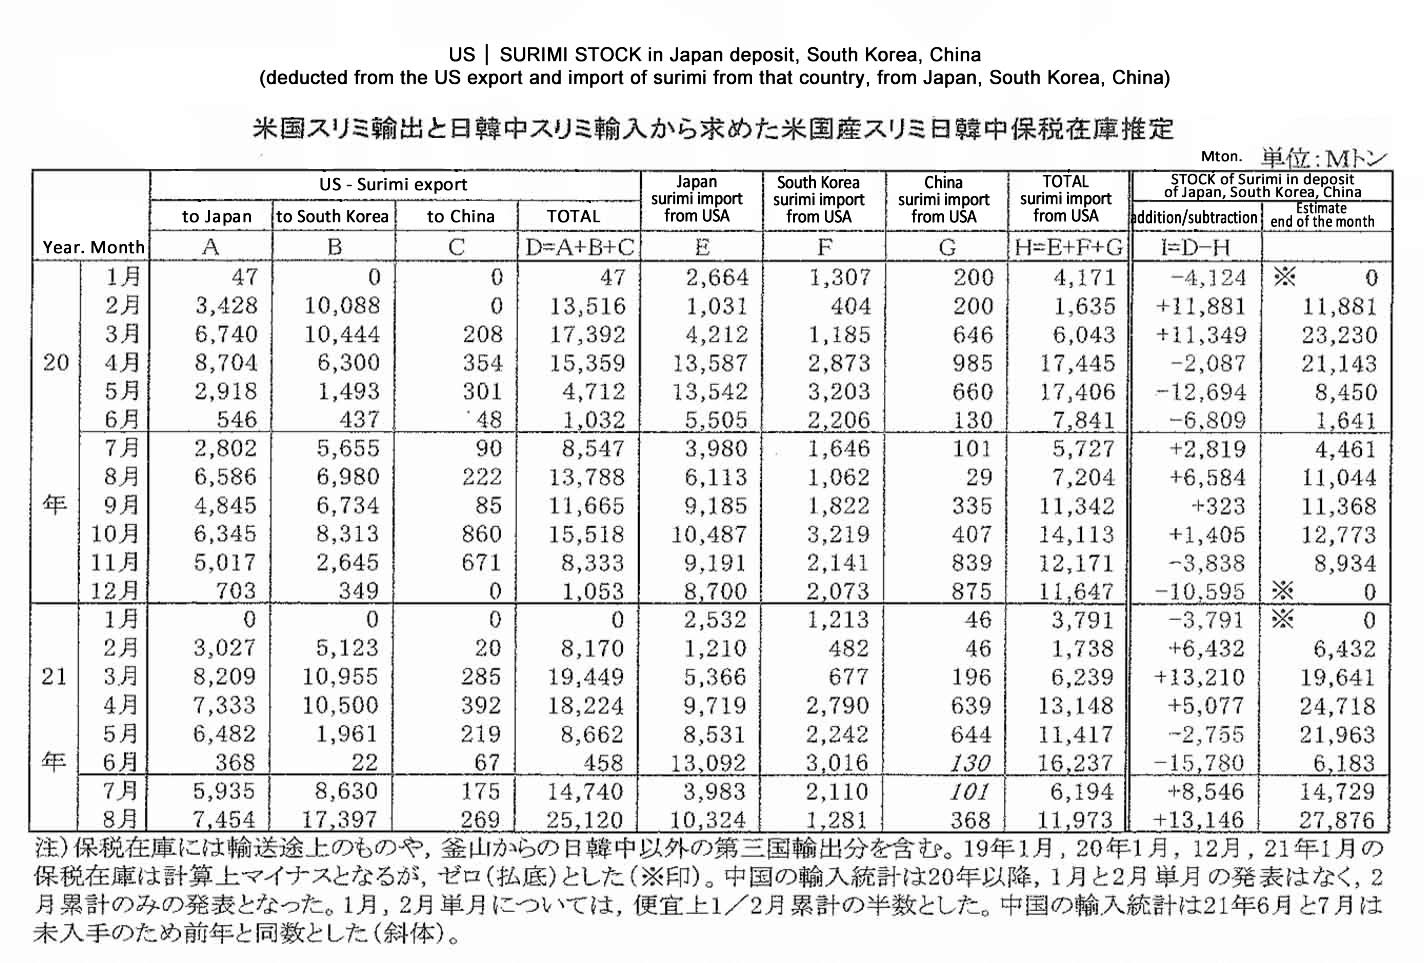 2021100605ing-Stock de surimi estadounidense en deposito de Japon-Corea del Sur-China FIS seafood_media.jpg